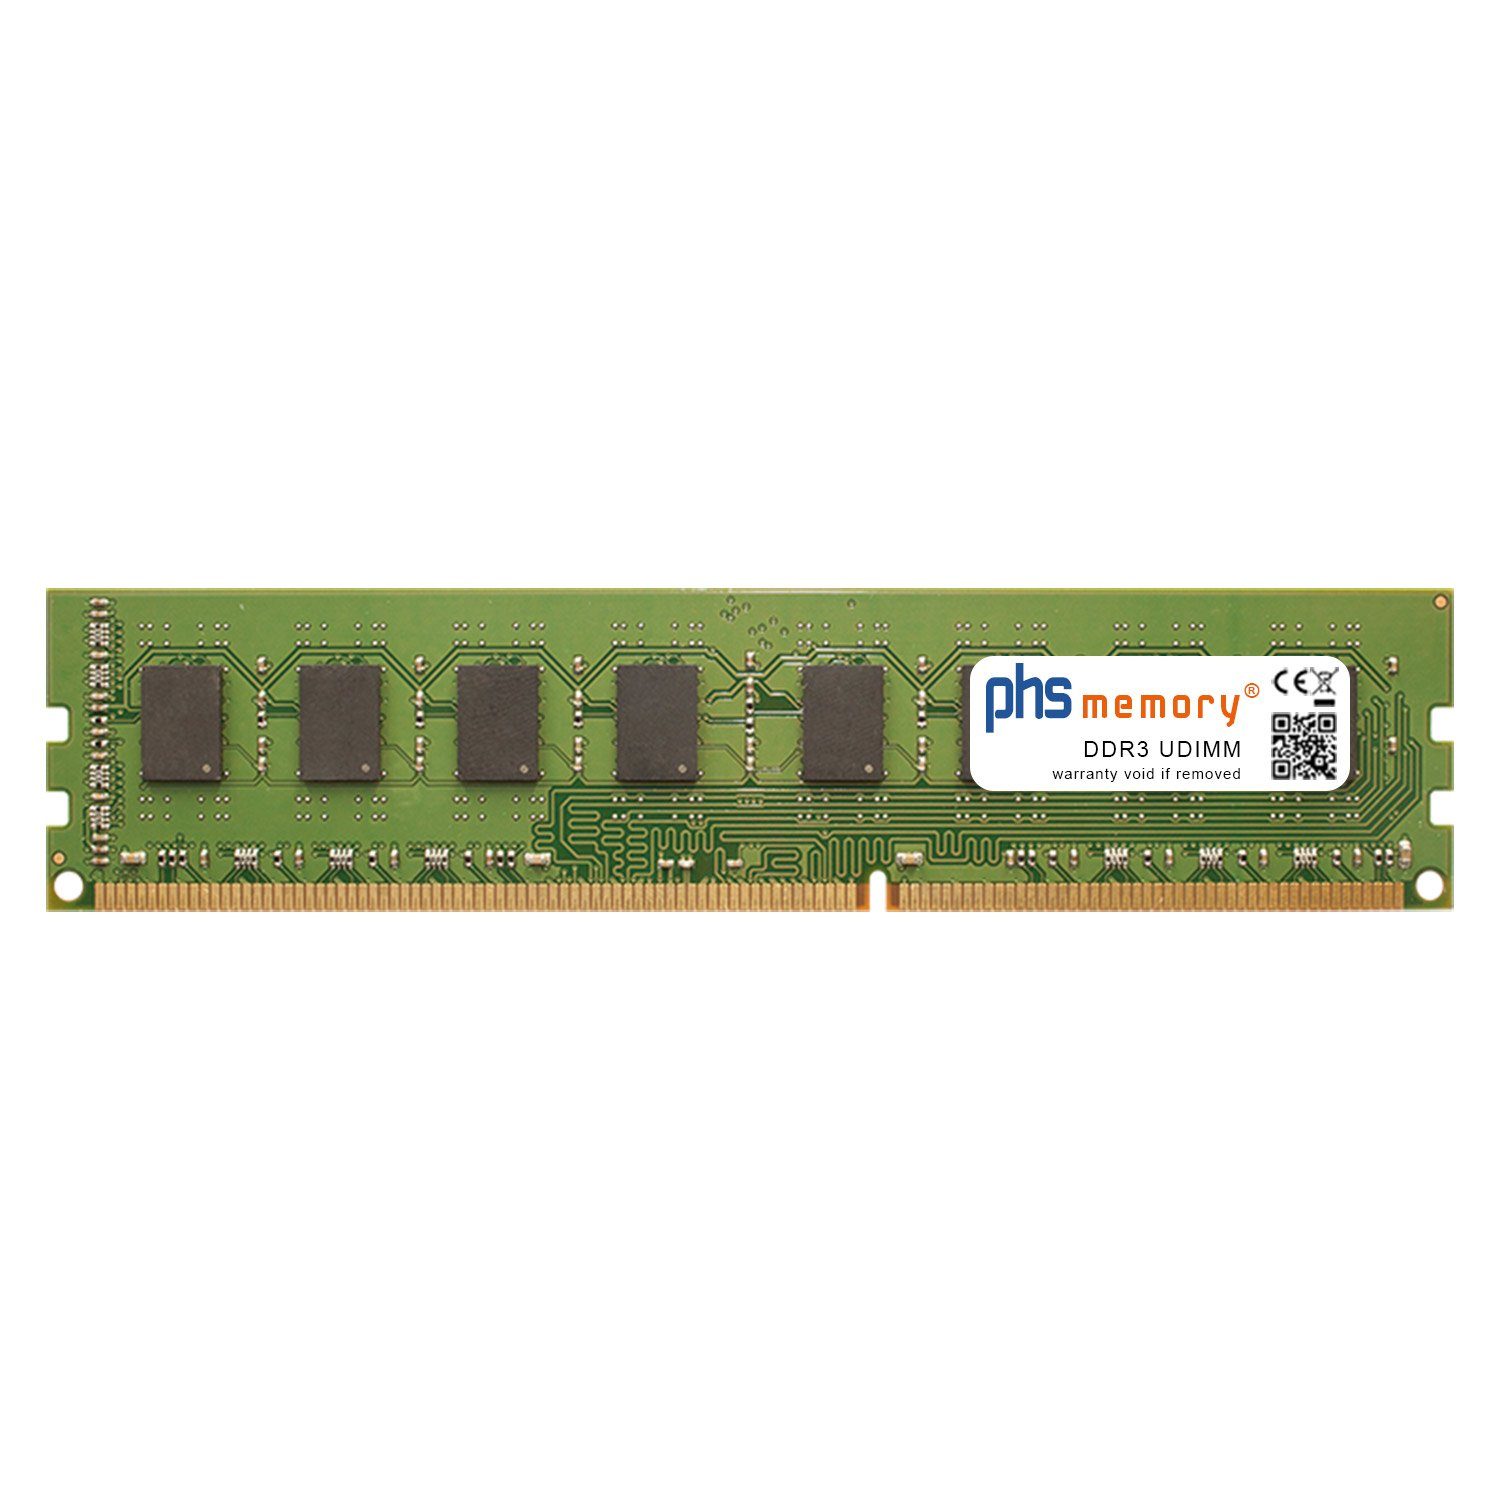 PHS-memory RAM für Jetway MIH61M-HU3 Arbeitsspeicher